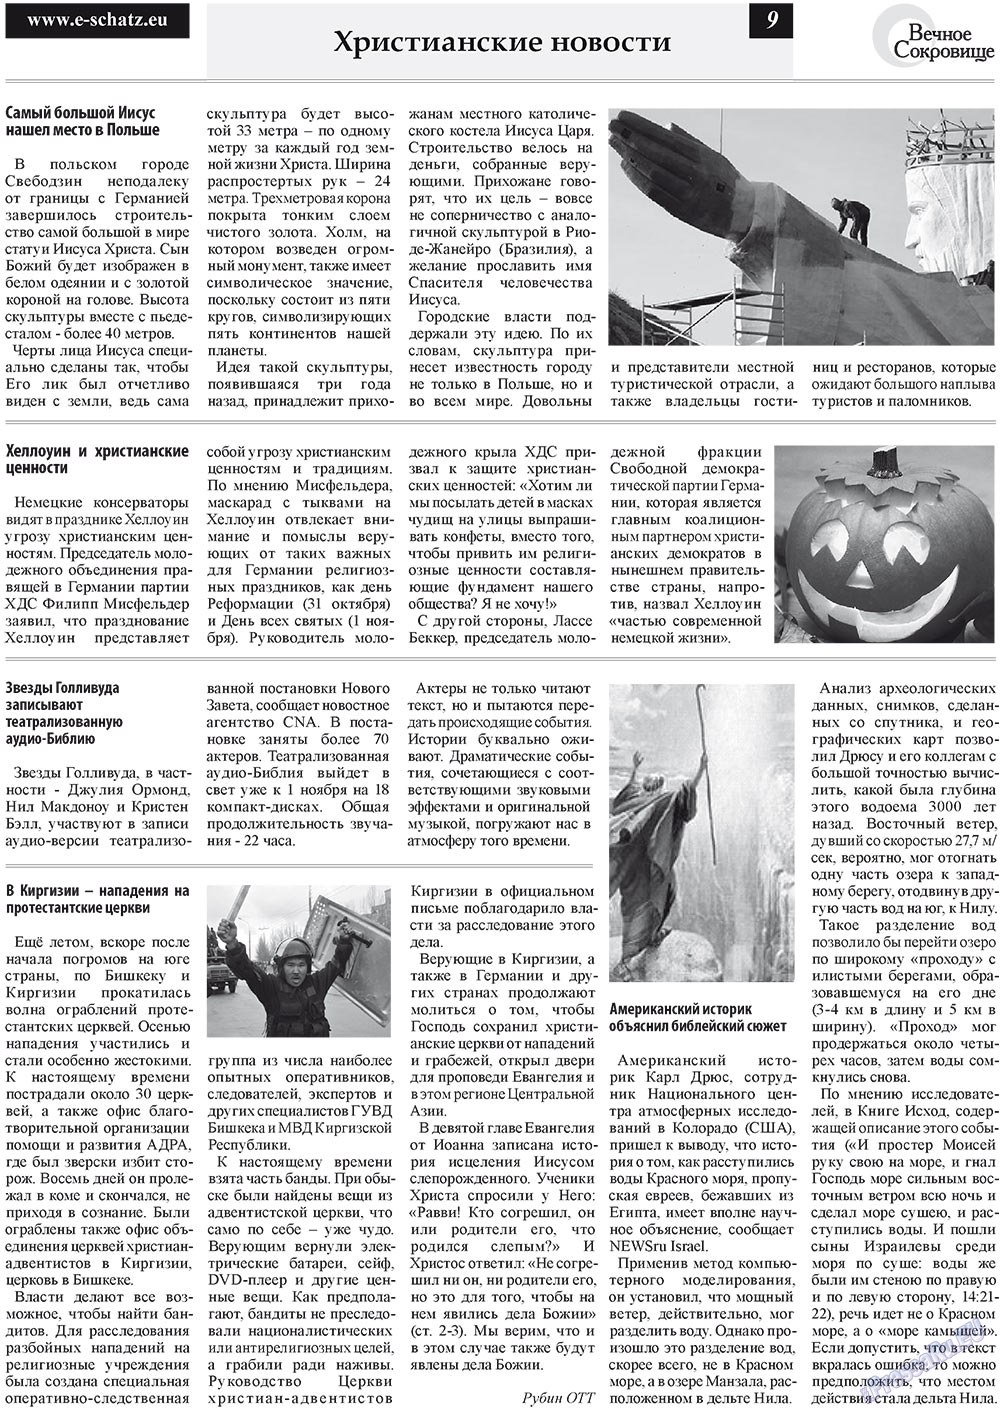 Вечное сокровище, газета. 2010 №4 стр.9